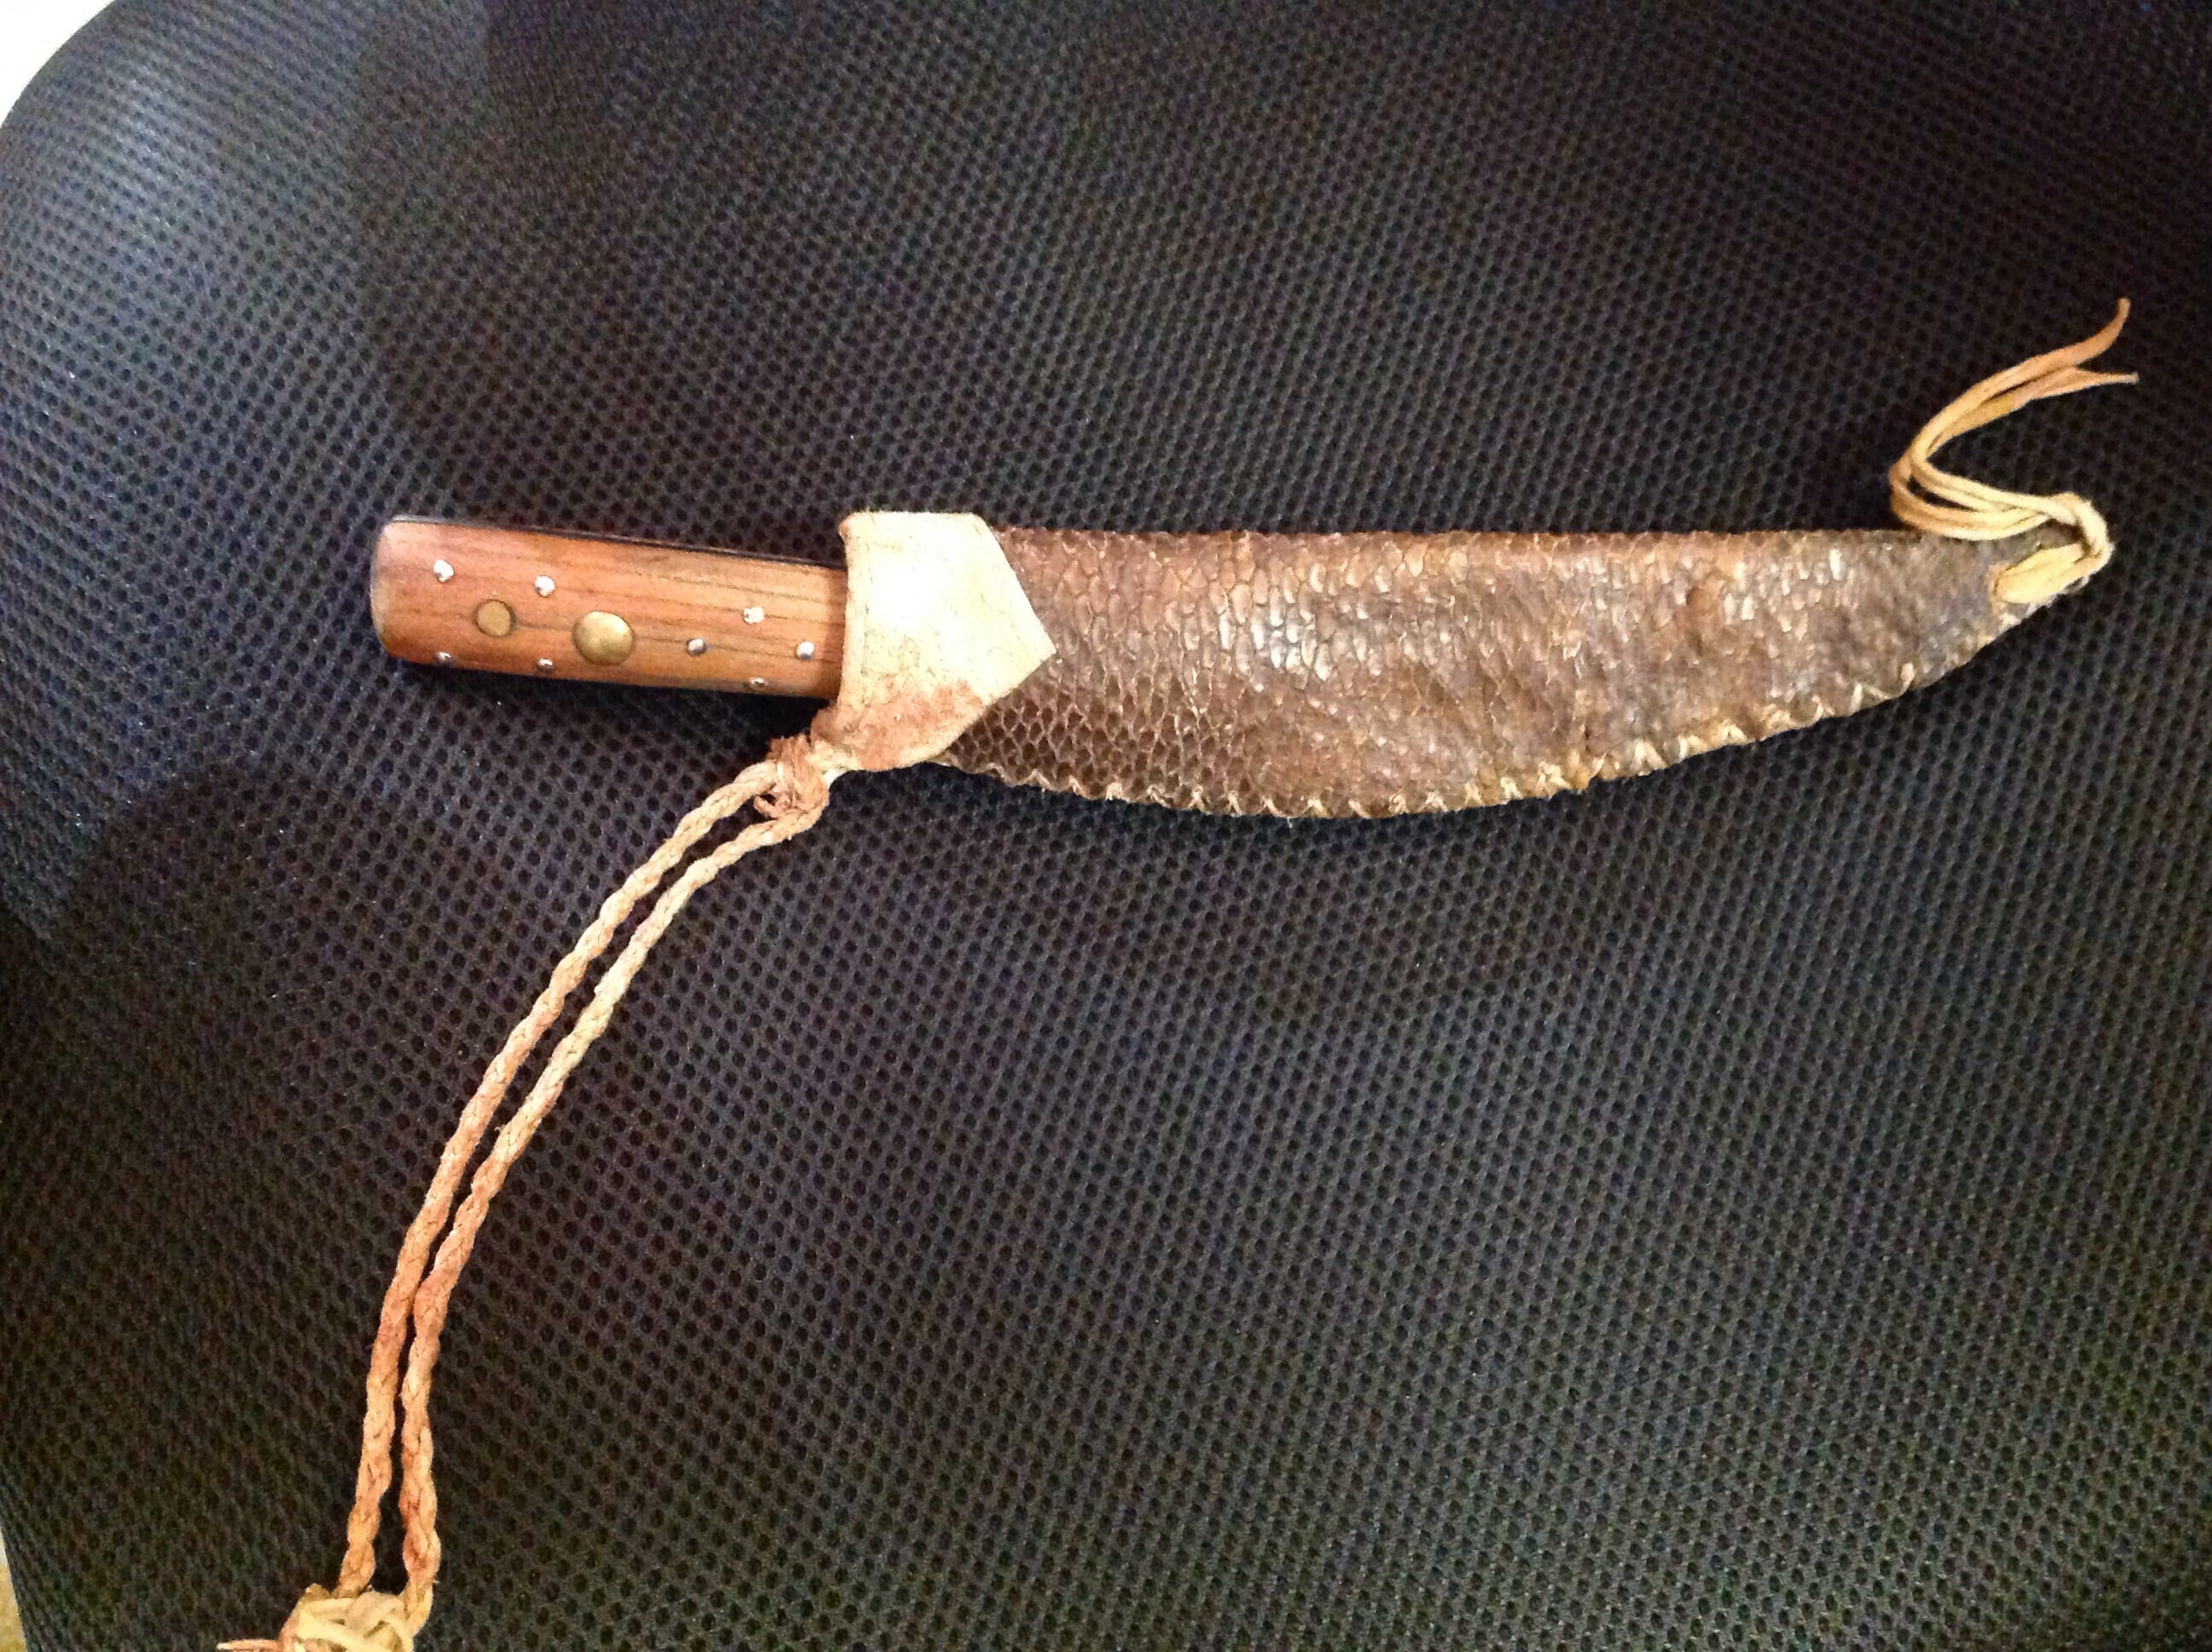 Beaver Tail Knife Sheath with Knife